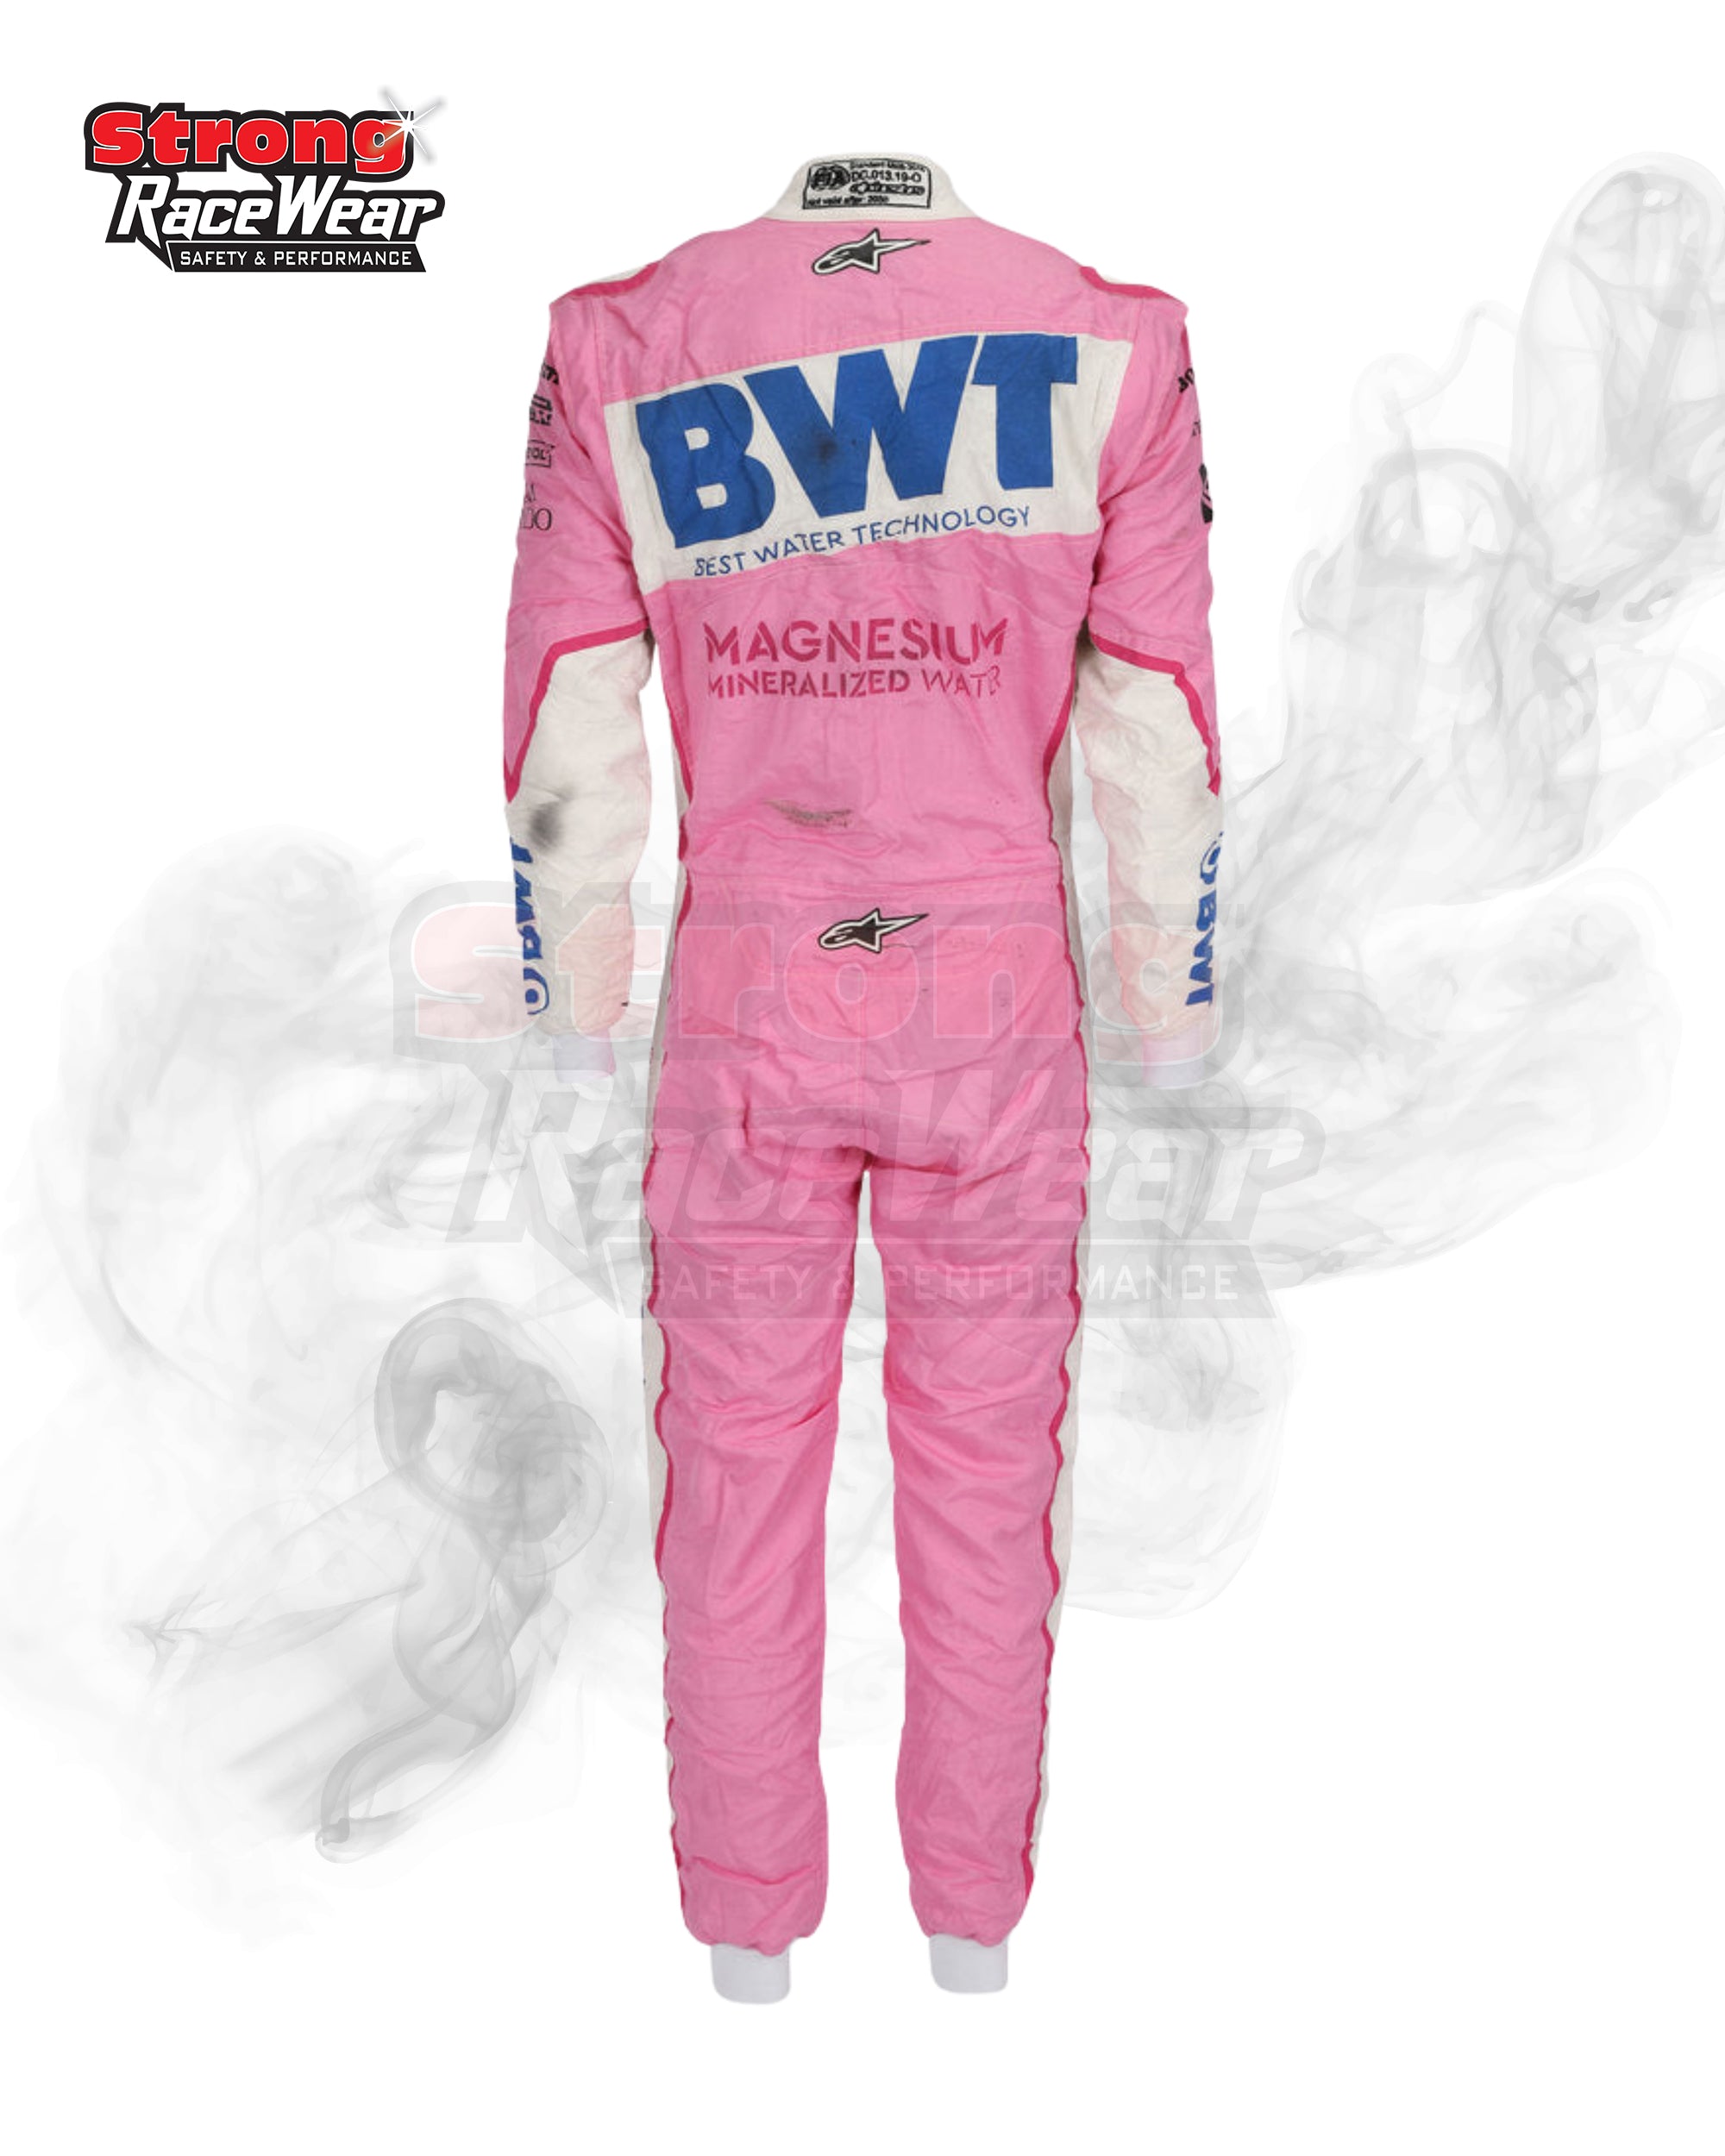 Nico Hulkenberg 2020 Racing Suit